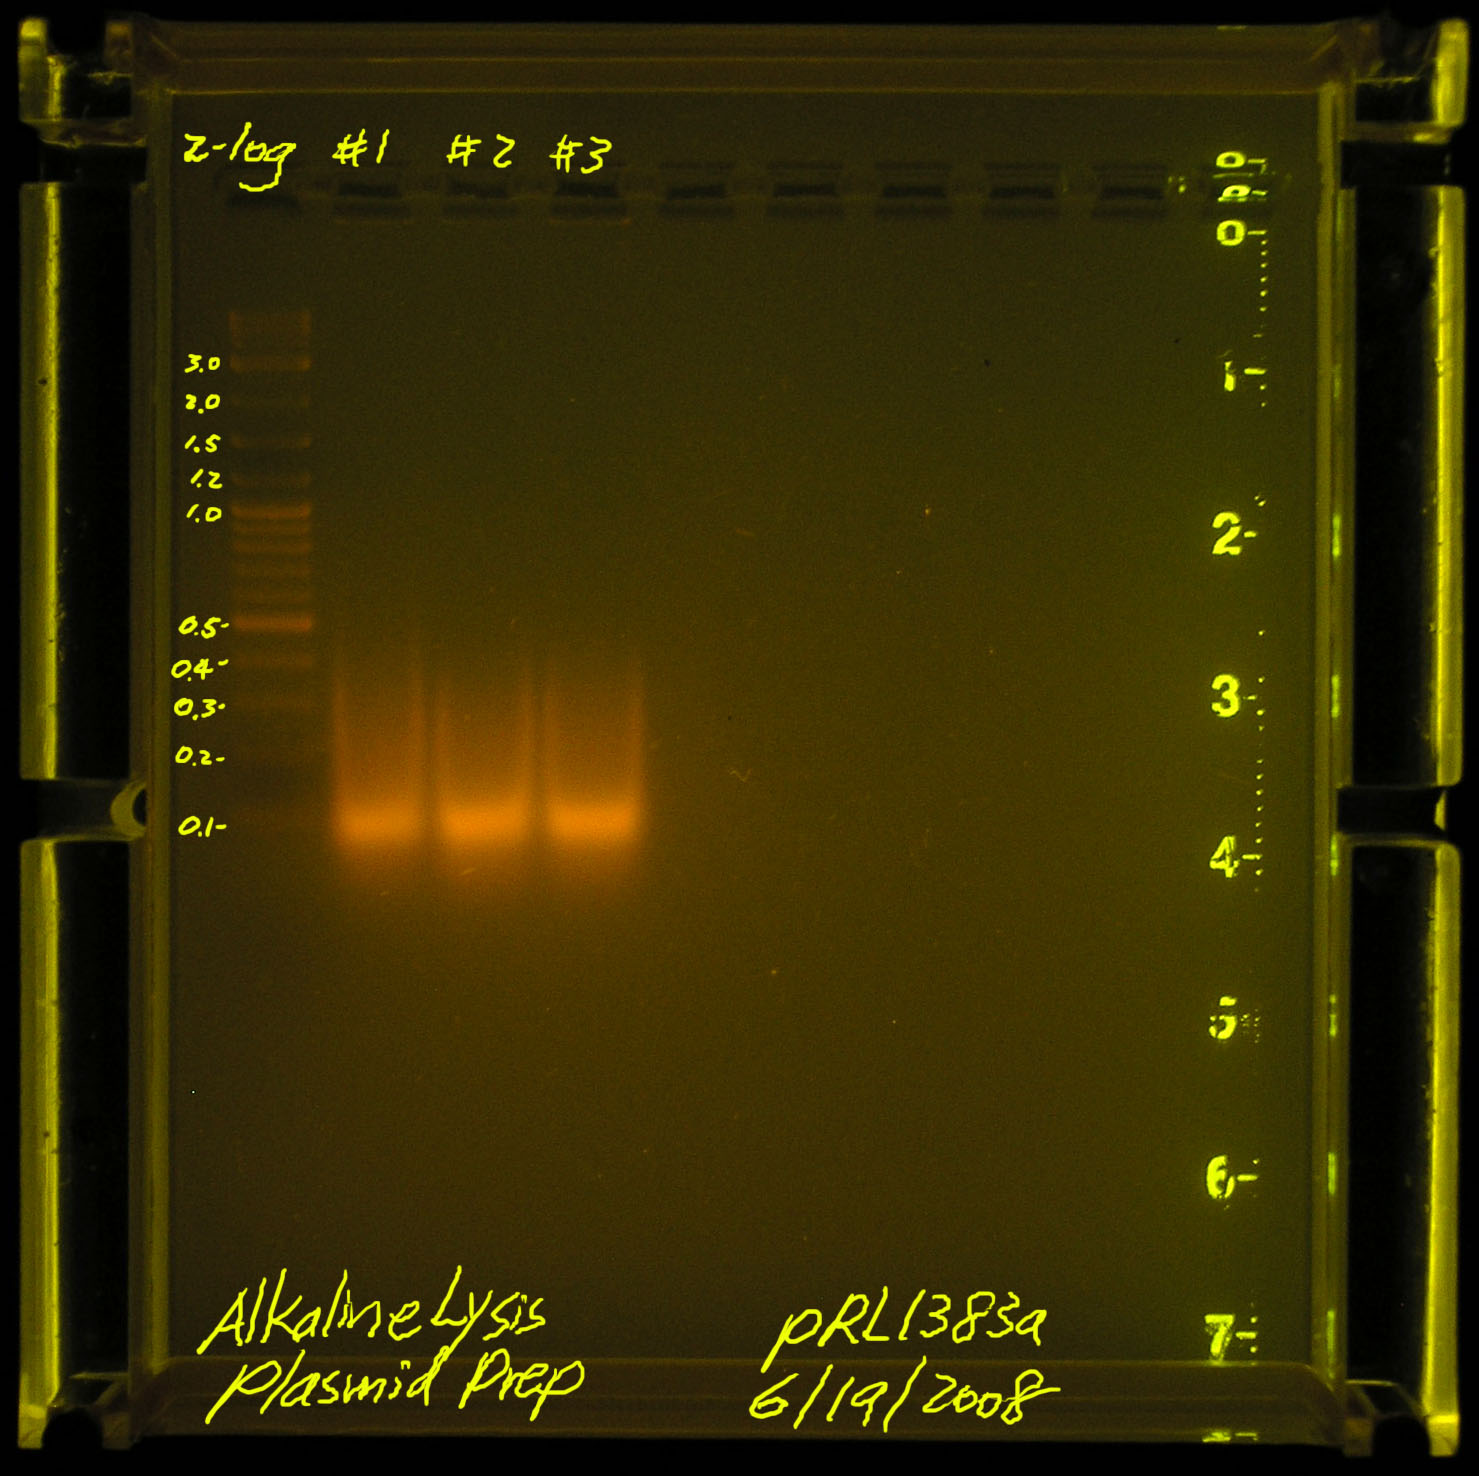 20080619-alkaline lysis plasmid prep.jpg